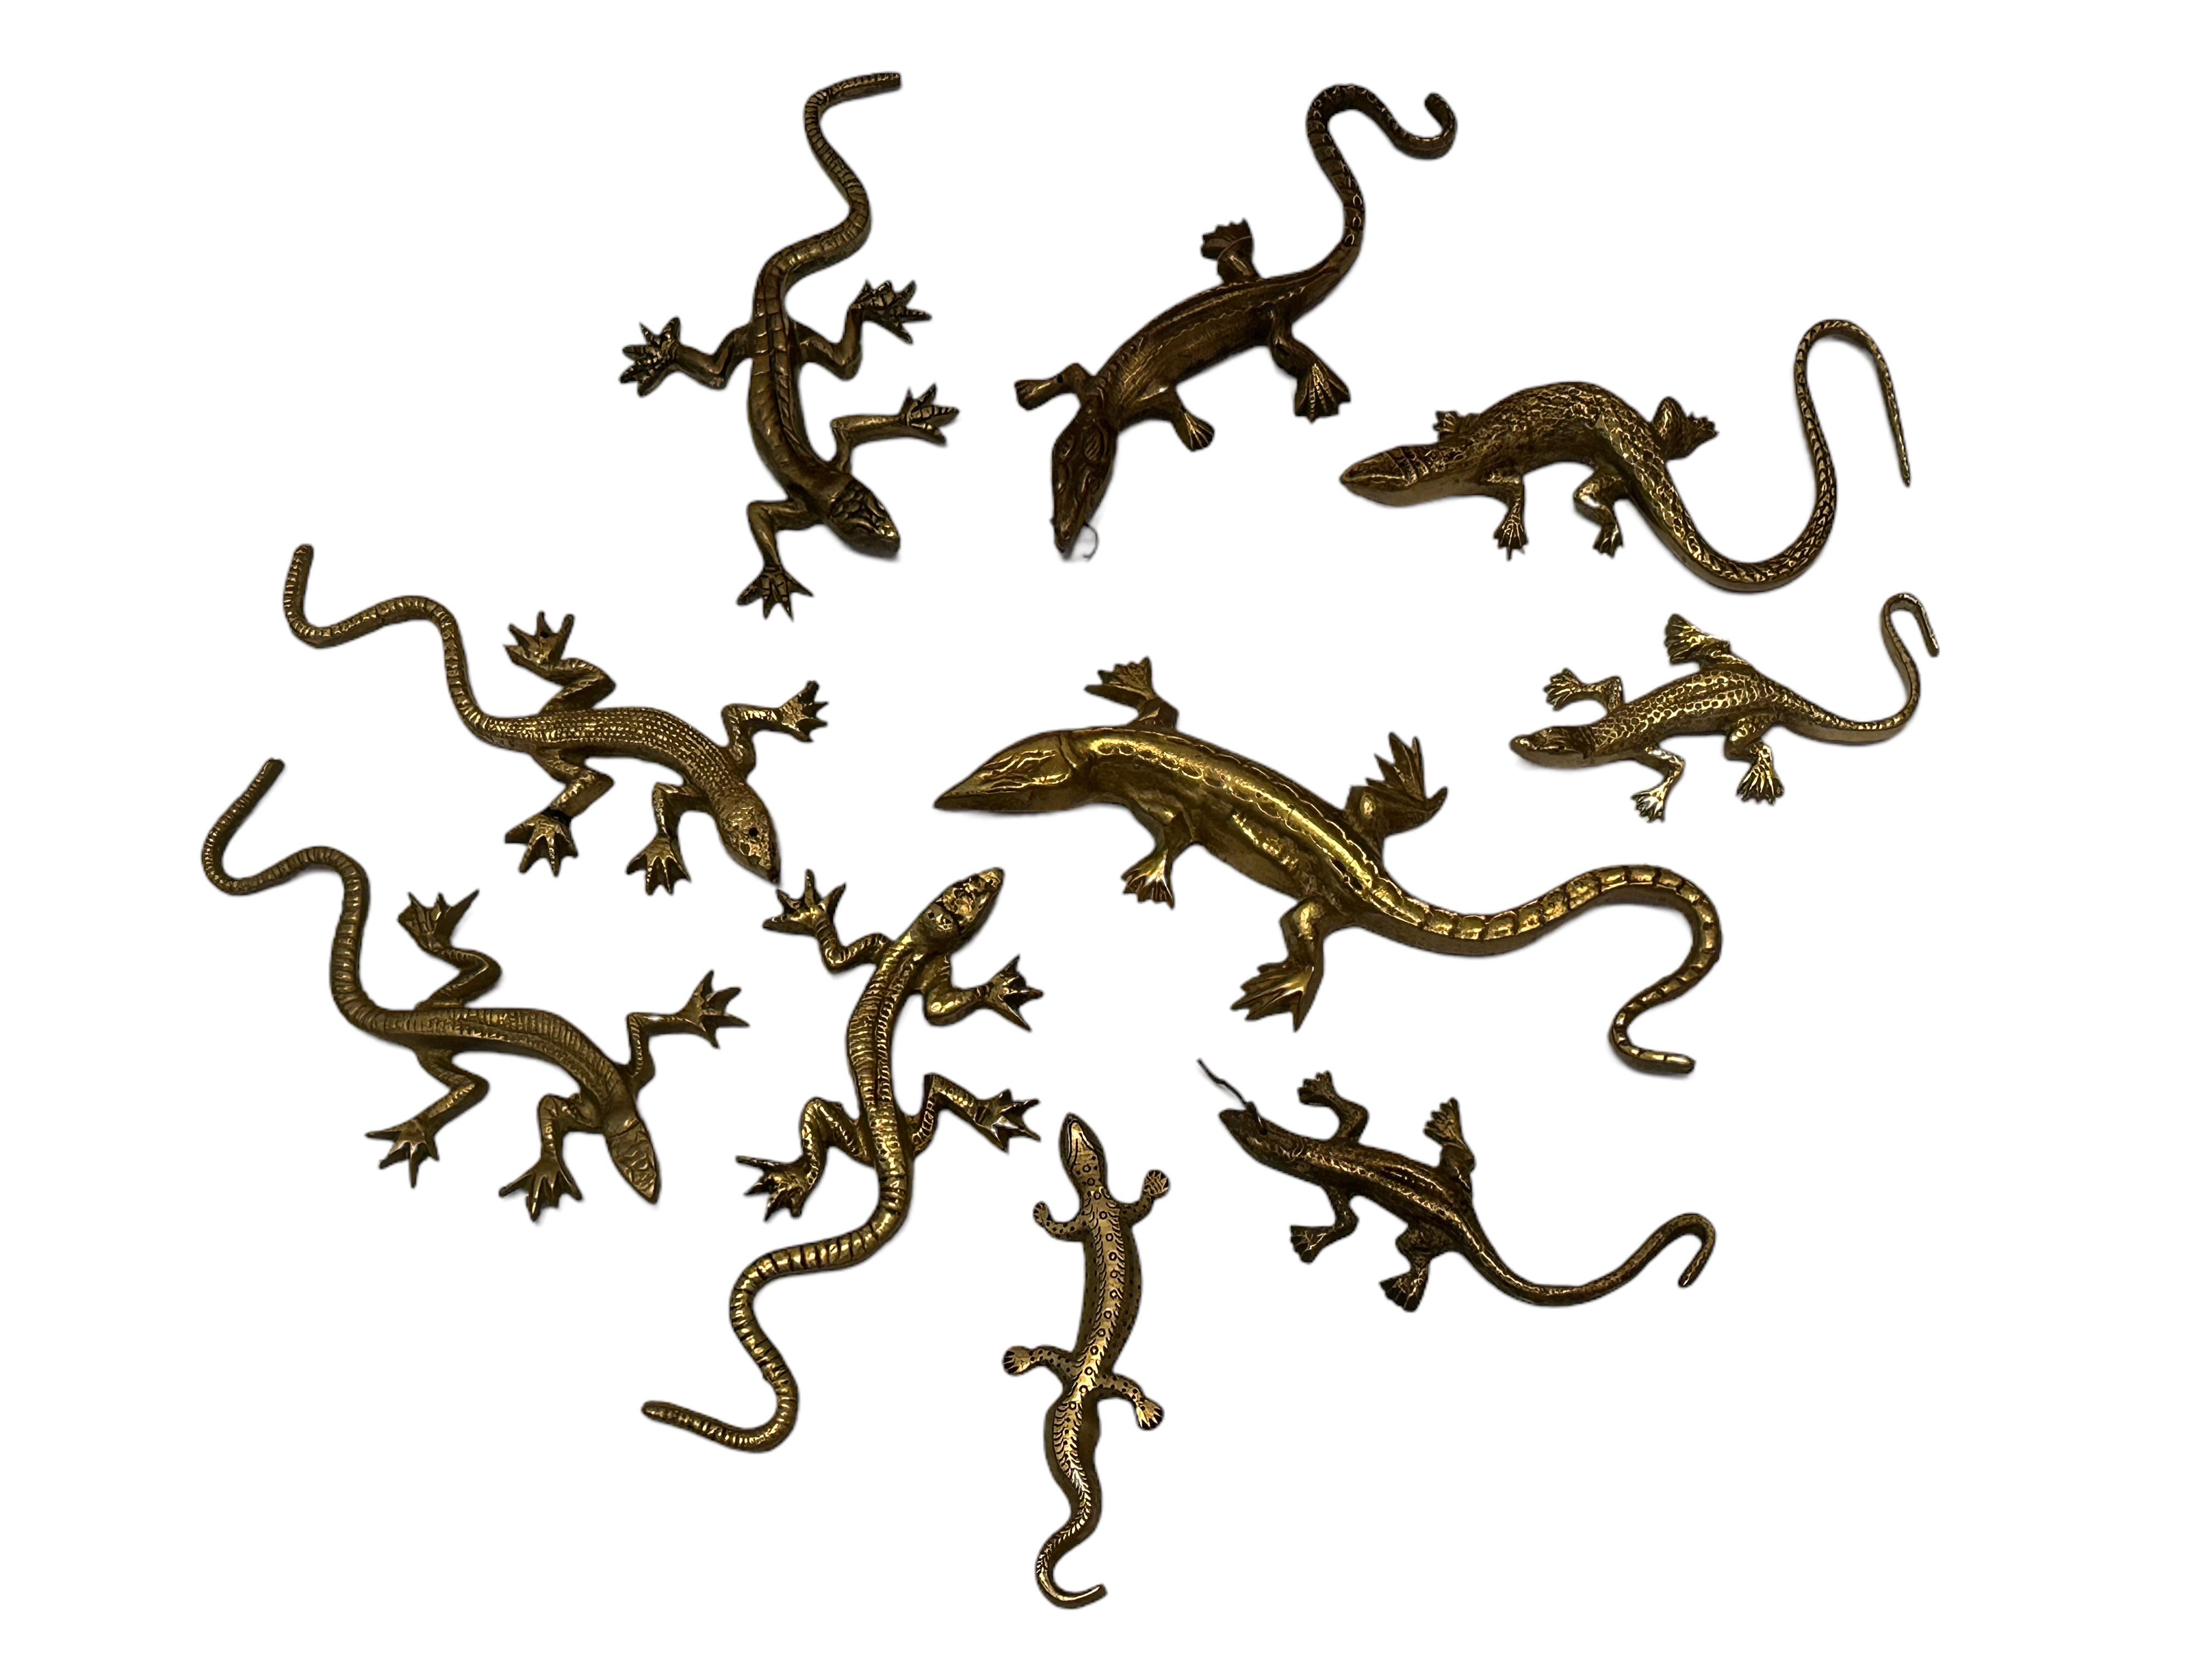 salamander vs gecko